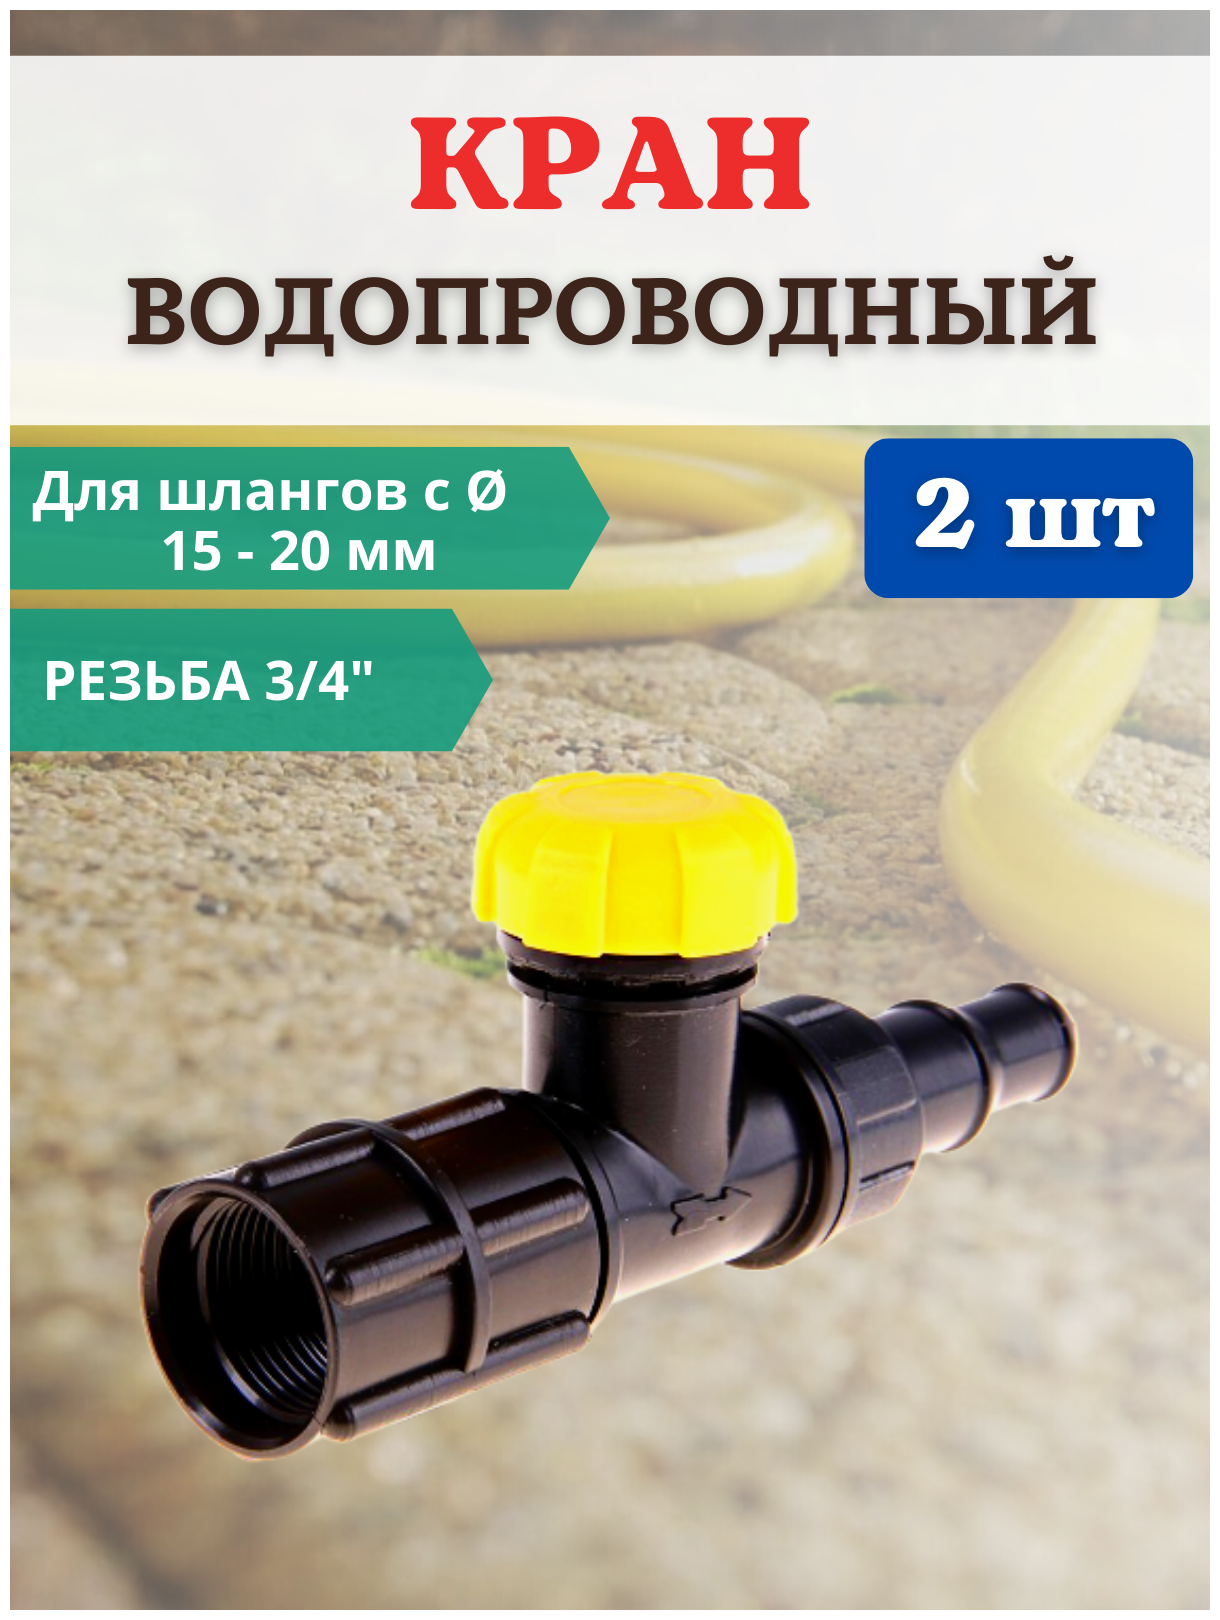 Благодатное земледелие Садовый водопроводный кран КВ-20М-СШ 3/4" для шланга D 15-20 мм 2 шт.